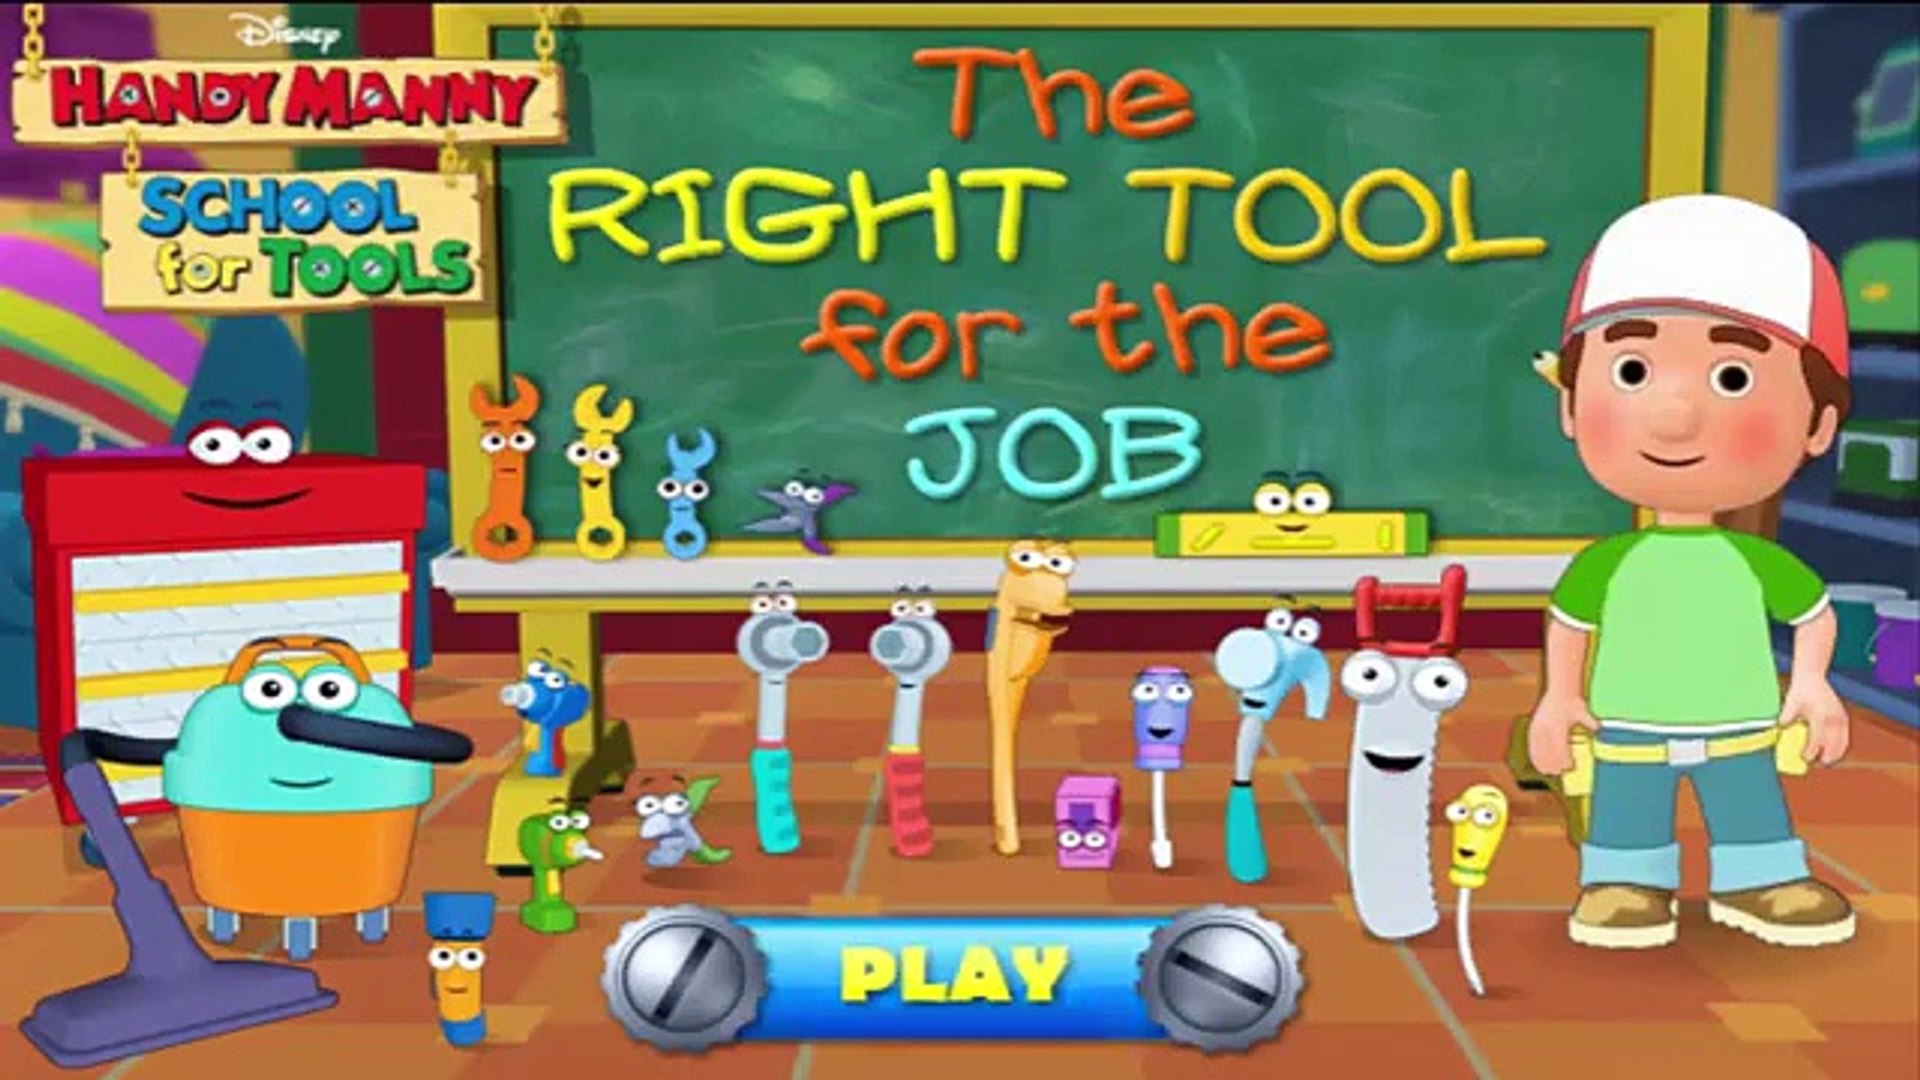 ⁣Мультфильм дисней для игра удобный работа работа Мужественный Правильно Школа в инструмент Инструмен